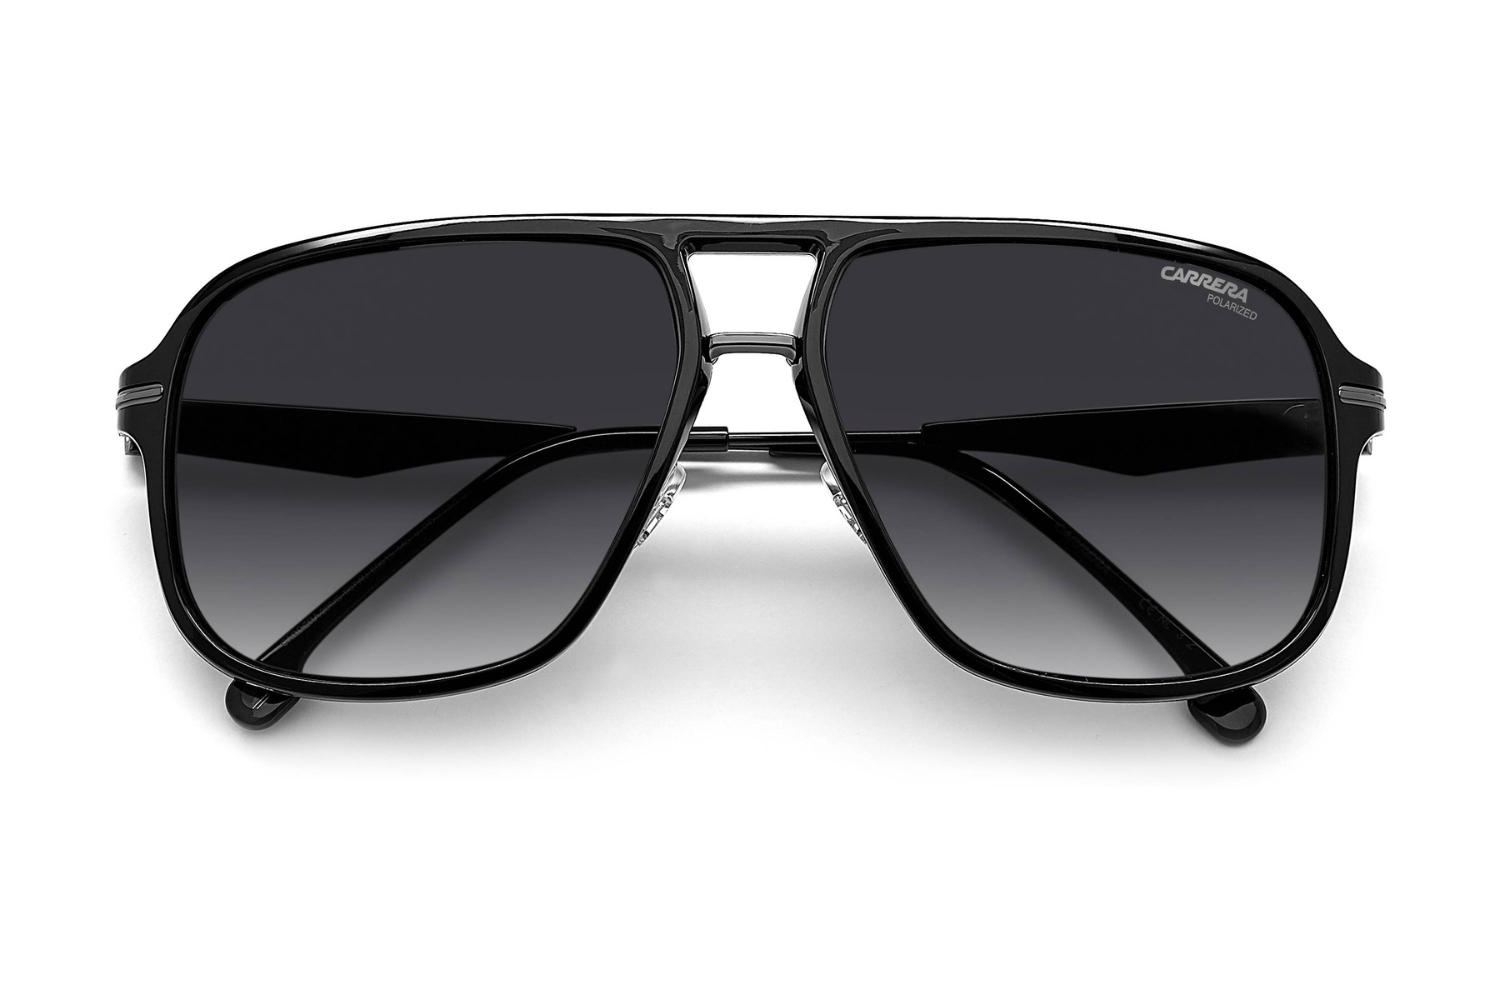 Carrera Sunglasses – Lexor Miami